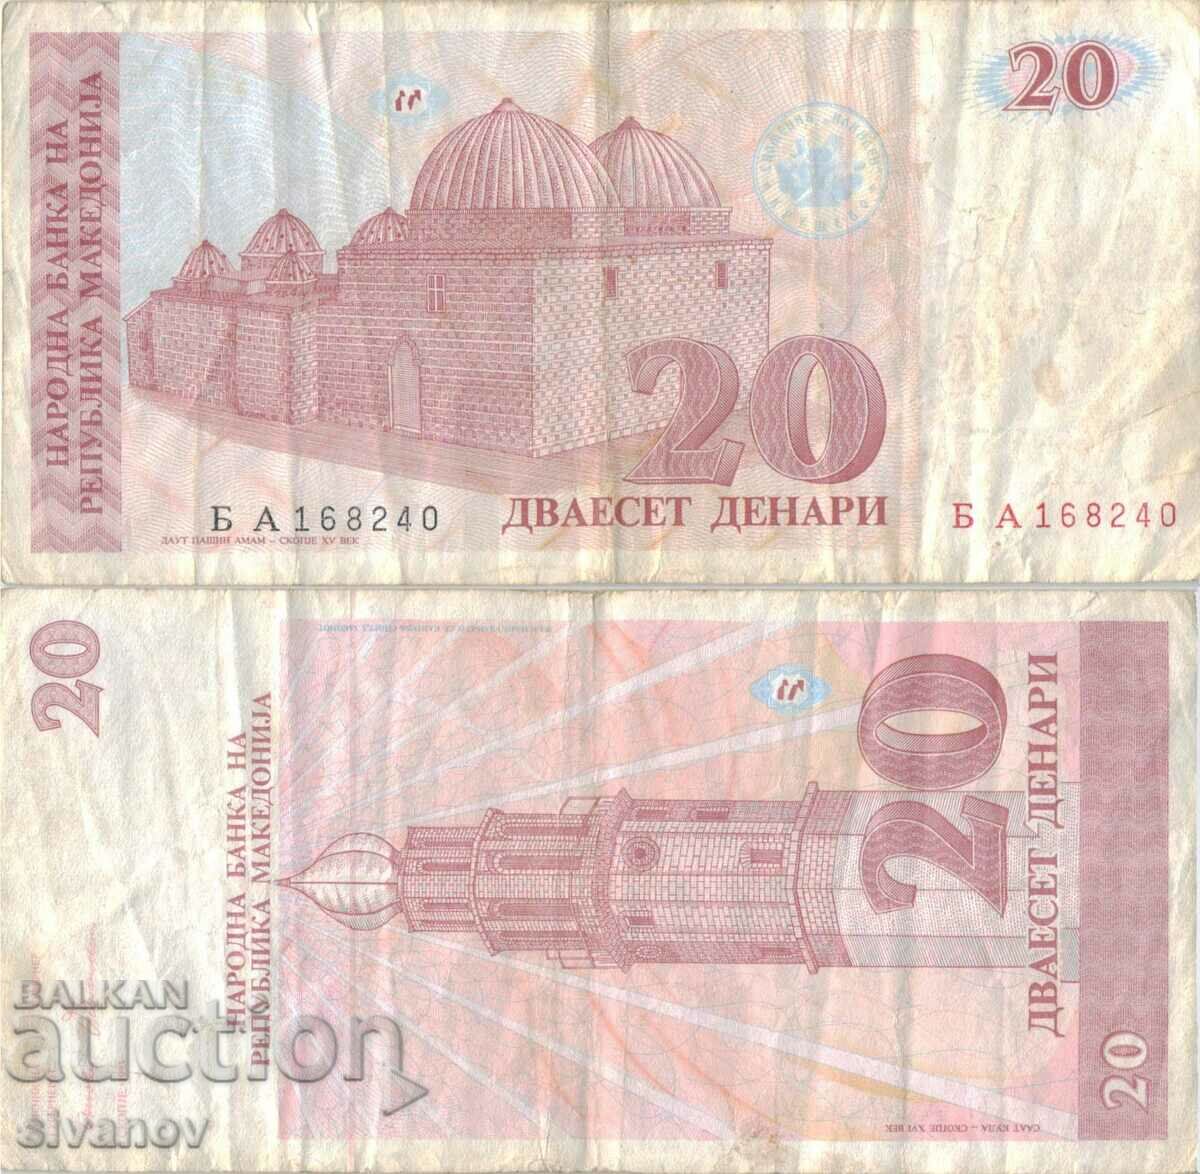 Macedonia 20 denari 1993 bancnota #5215